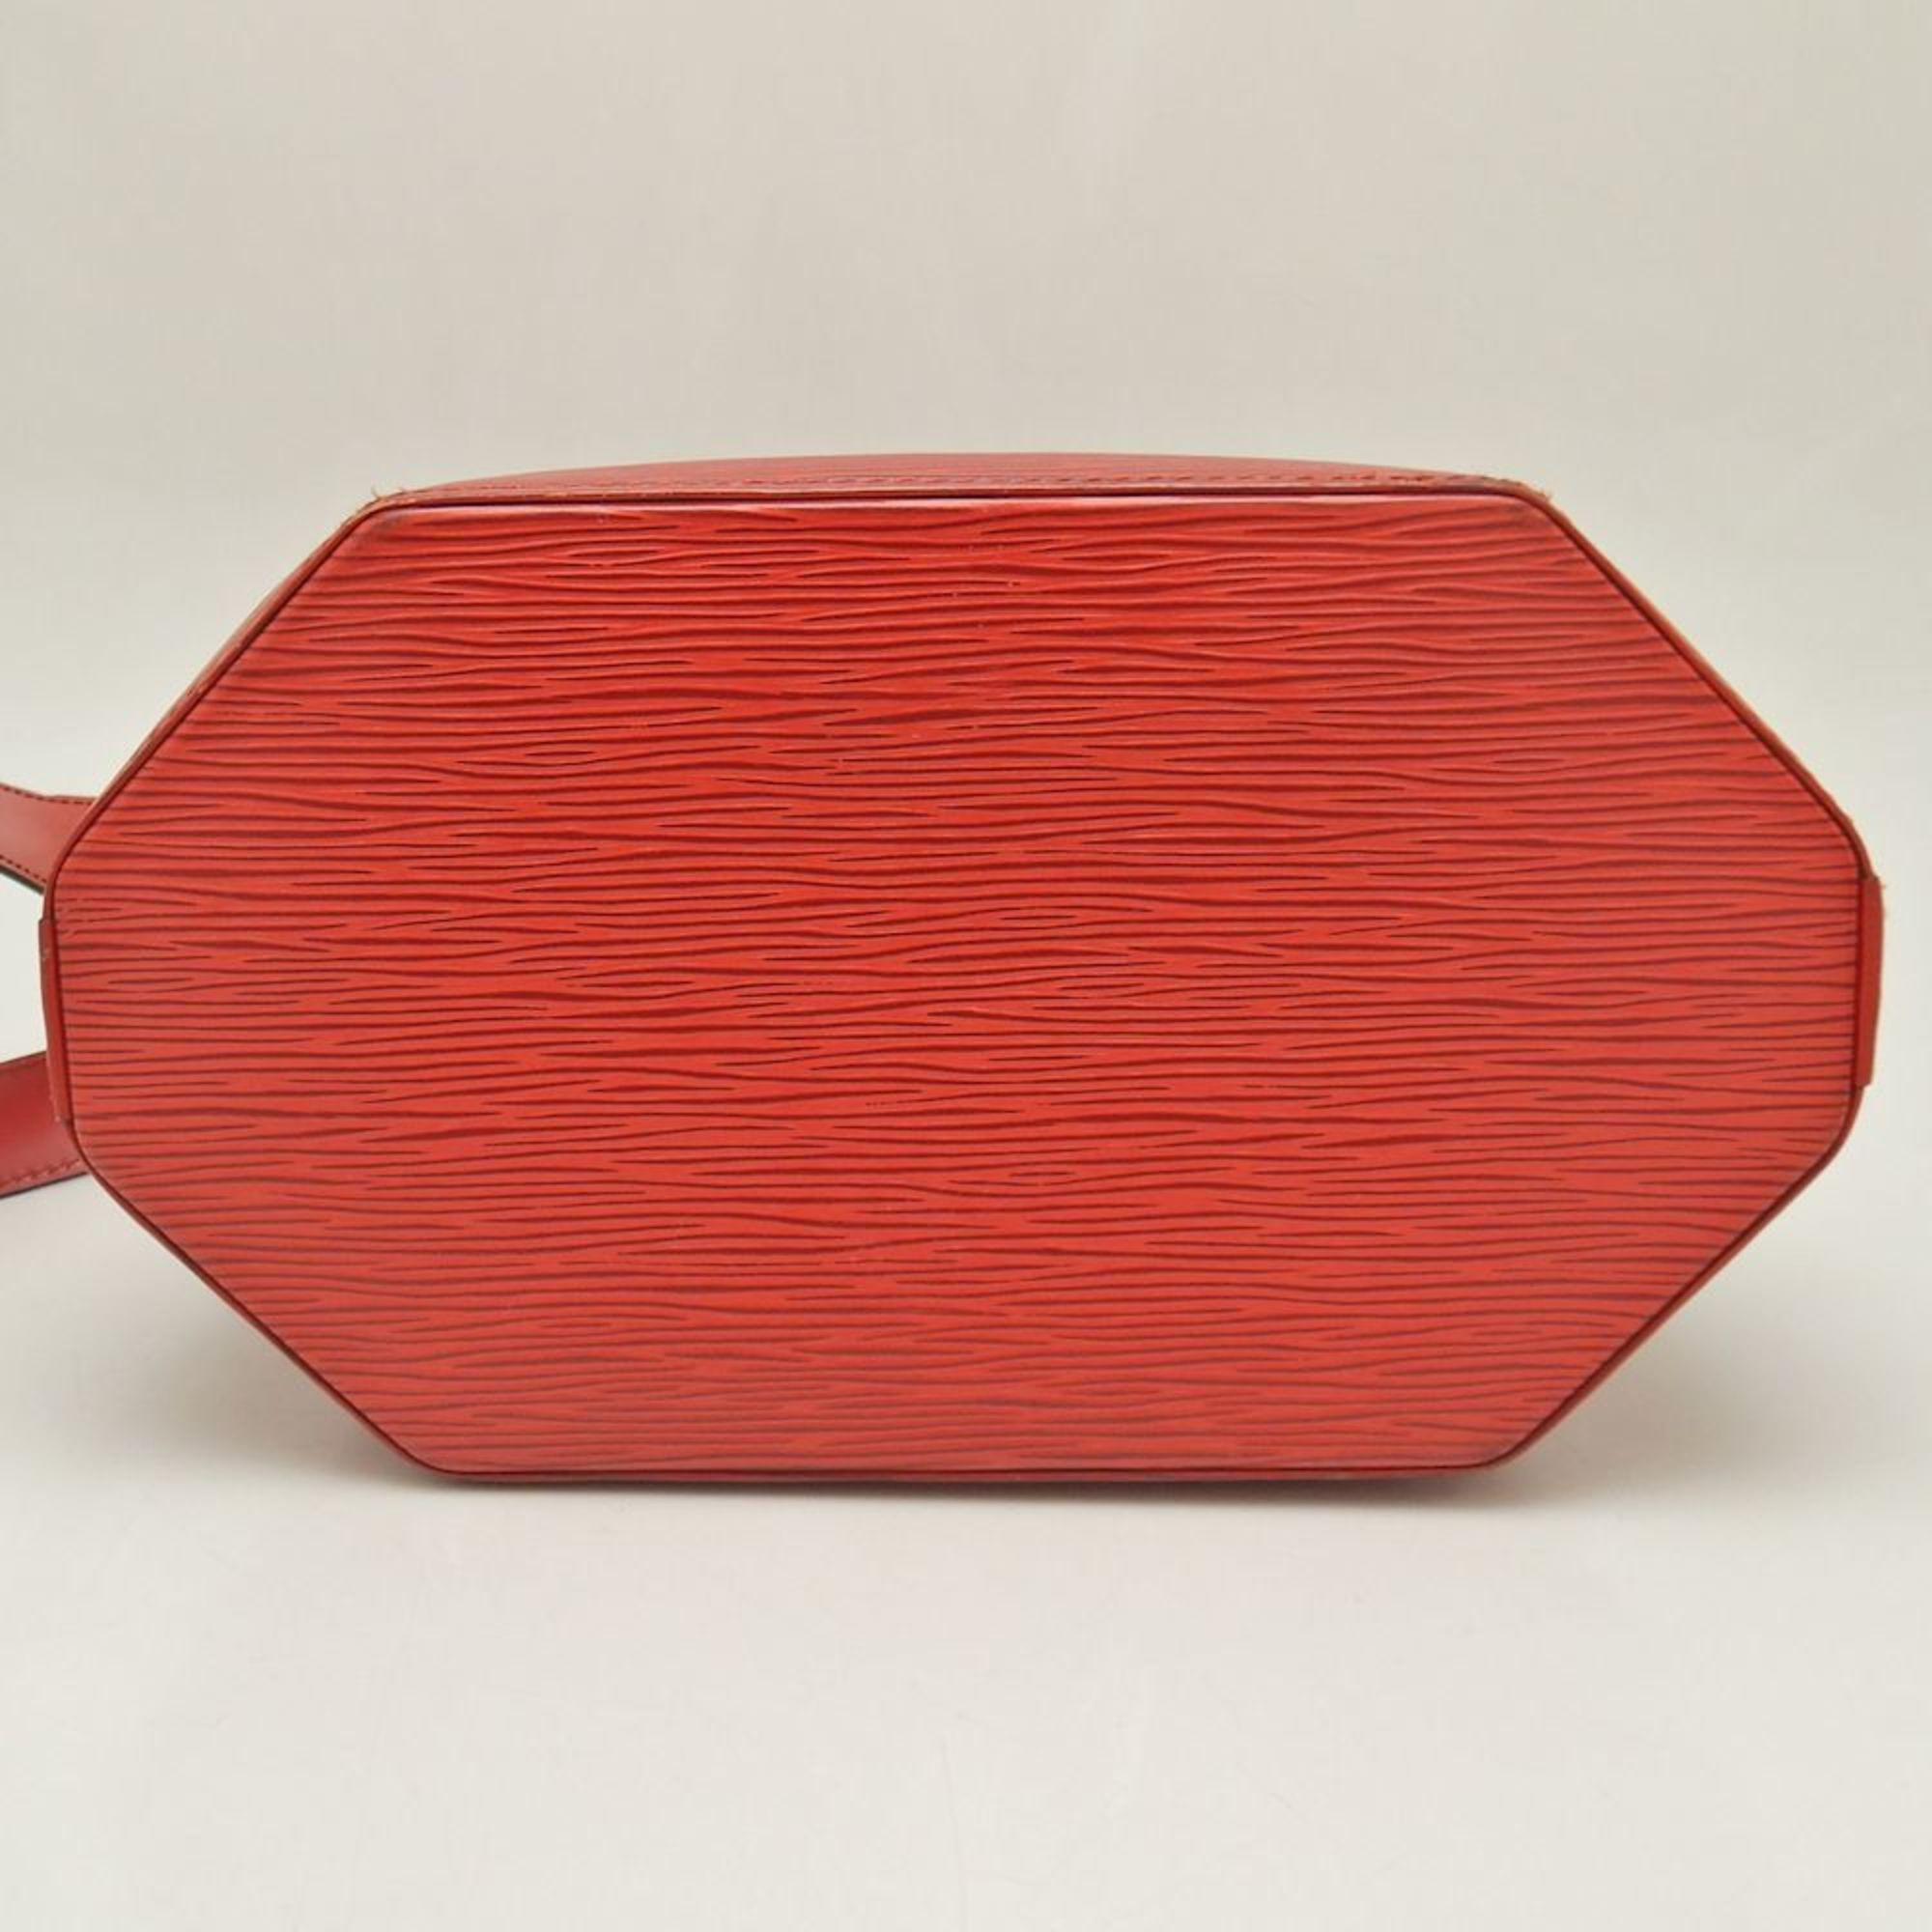 LOUIS VUITTON Louis Vuitton Epi Sac de Paul M80207 Shoulder Bag Castilian Red 251838